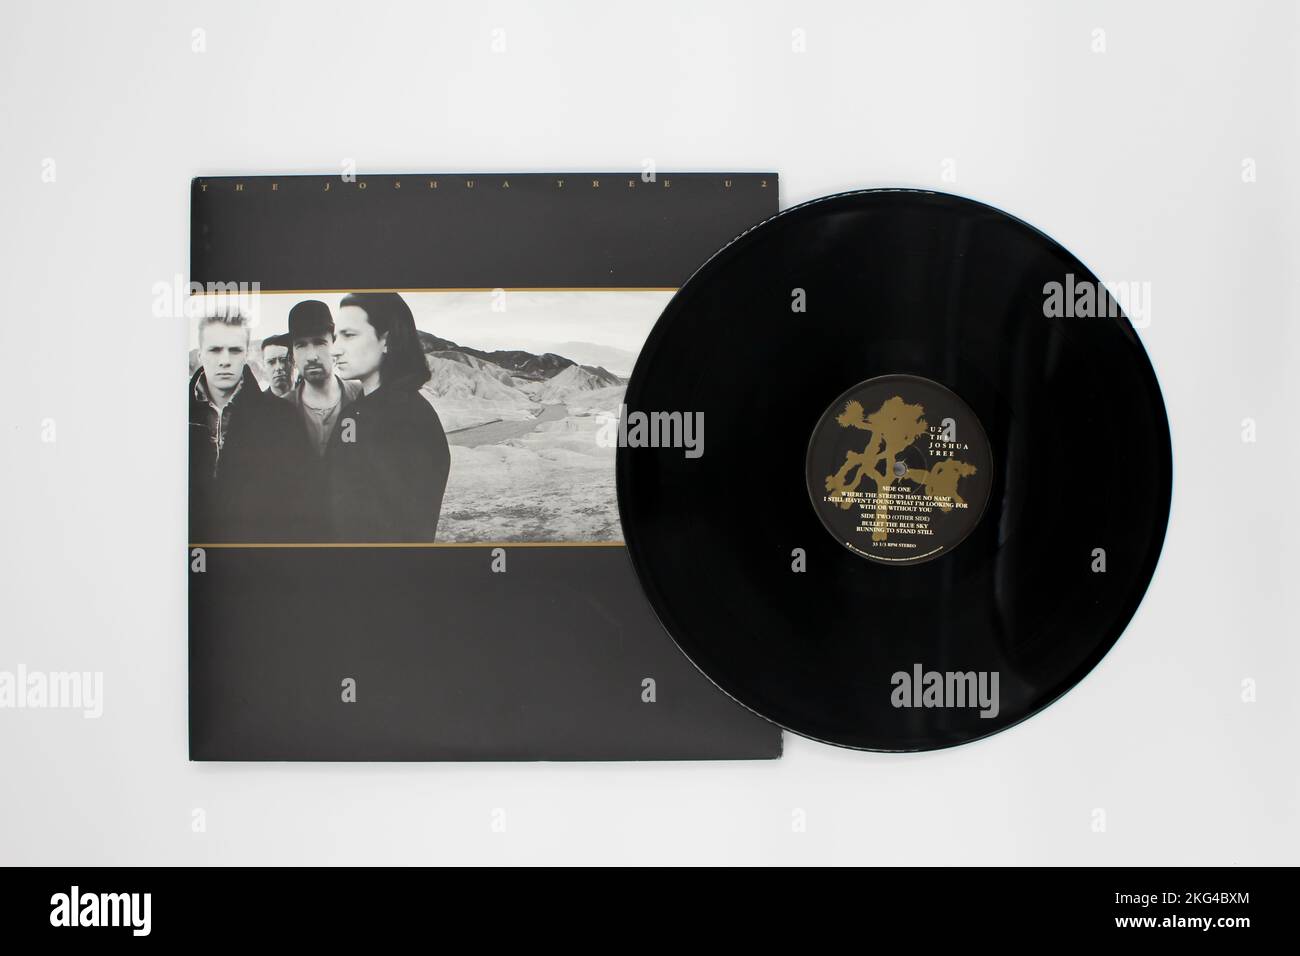 Irische Rockband U2-Album auf Vinyl-LP-Disc. Die Aufzeichnung wird Joshua Tree genannt. Albumcover Stockfoto